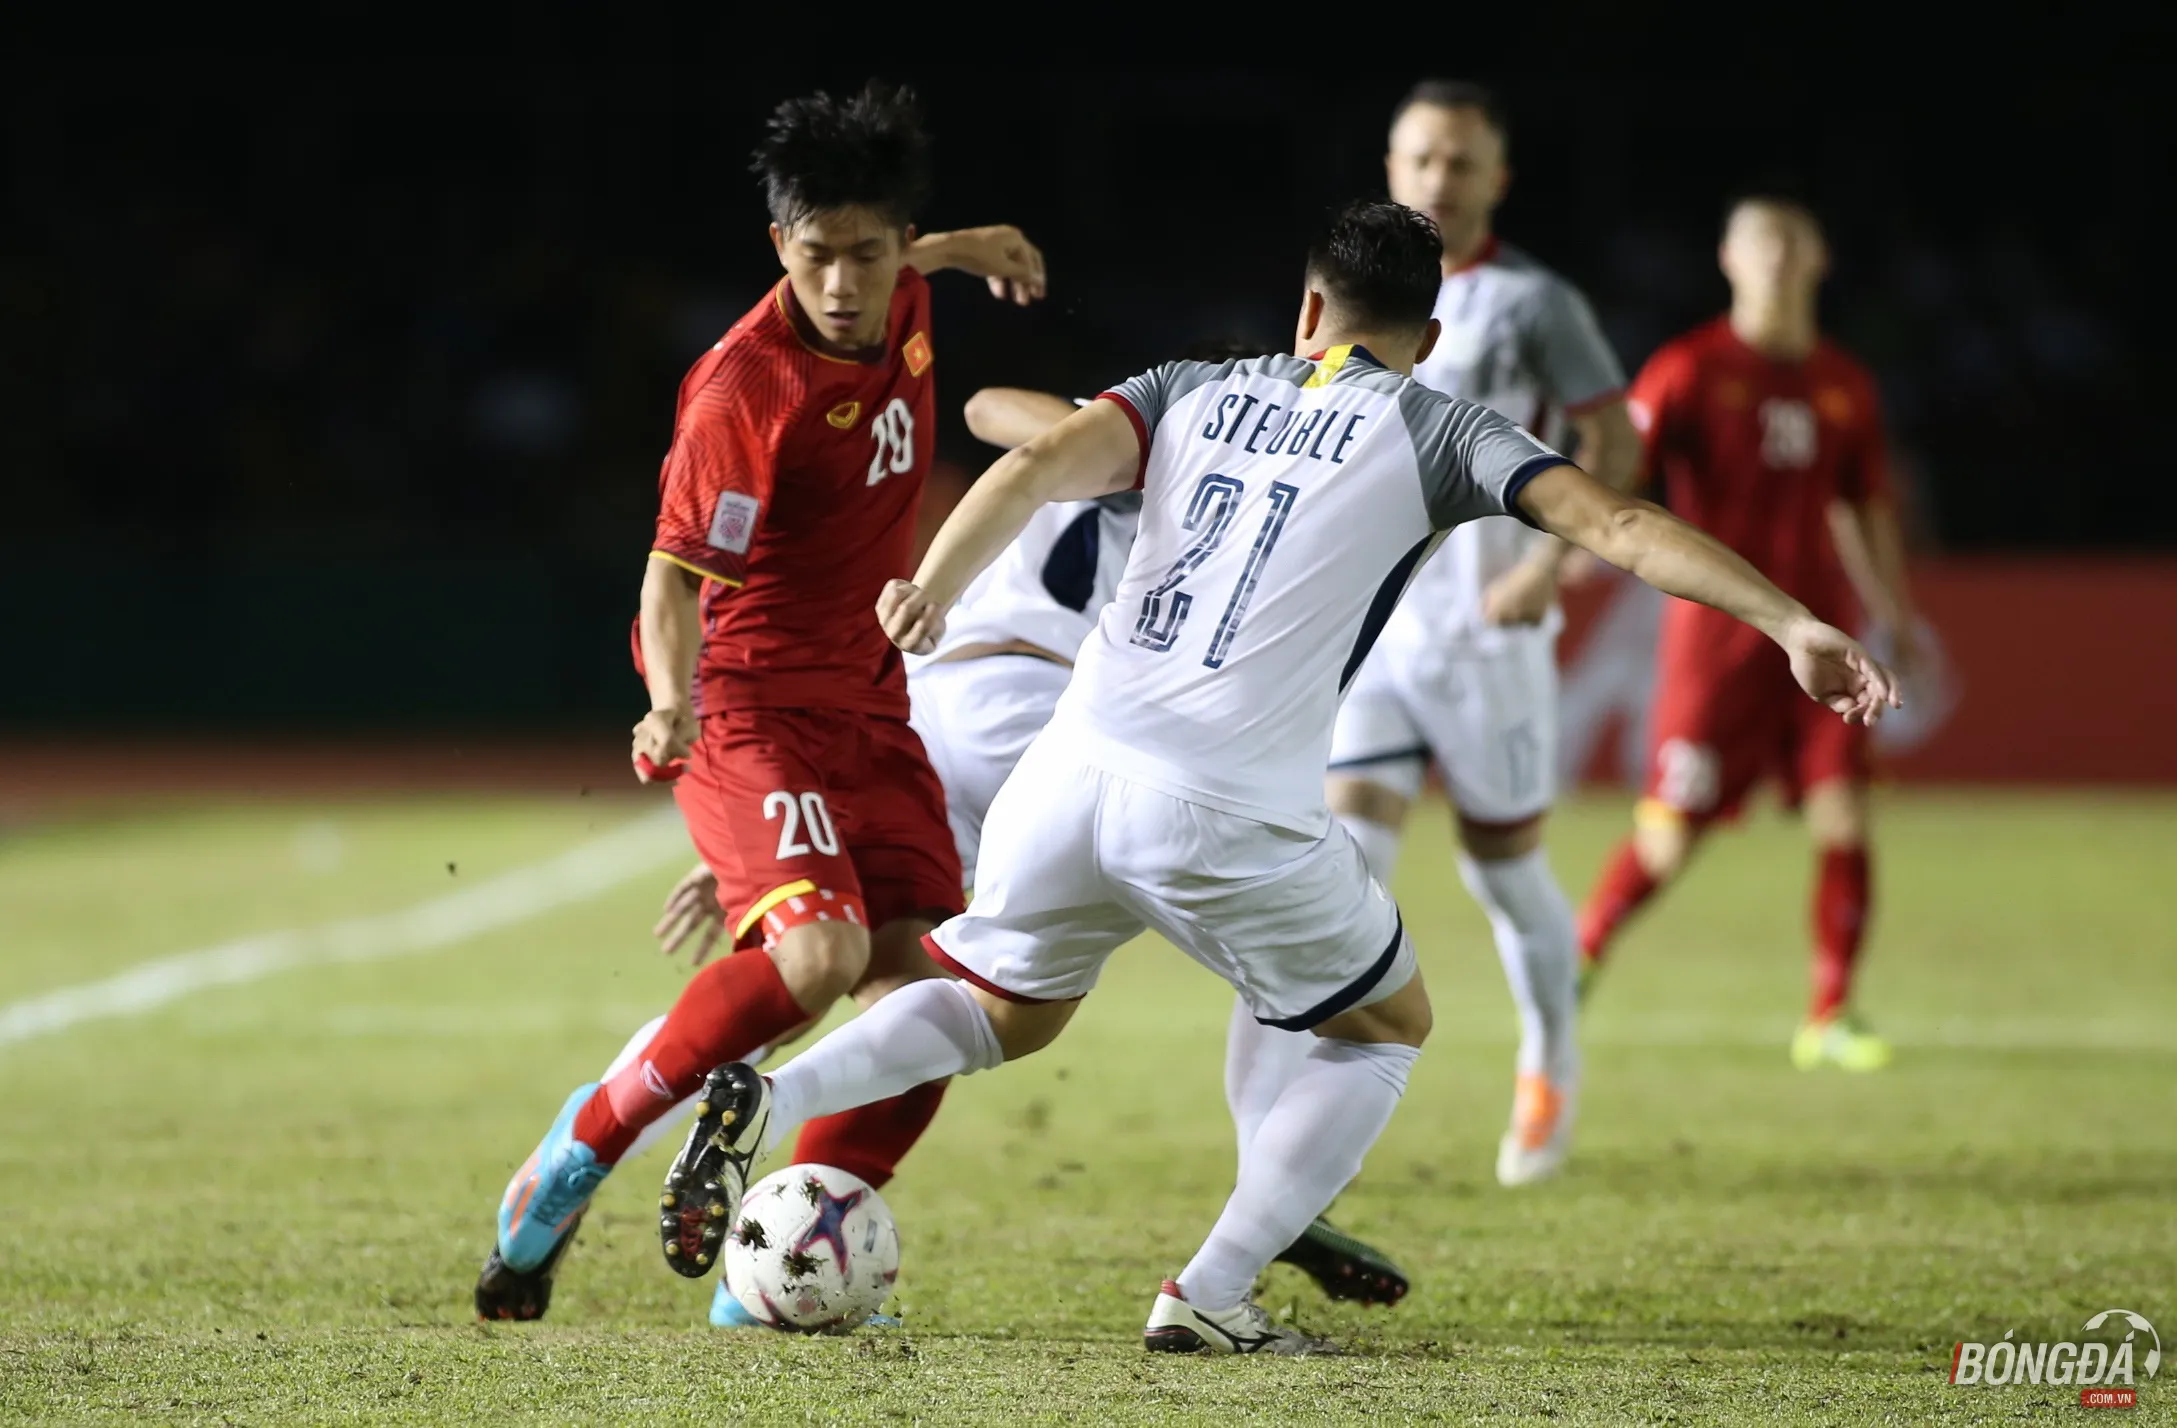 ĐT Việt Nam khoan mừng vội, bài học AFF Cup 2014 vẫn còn nguyên giá trị - Bóng Đá